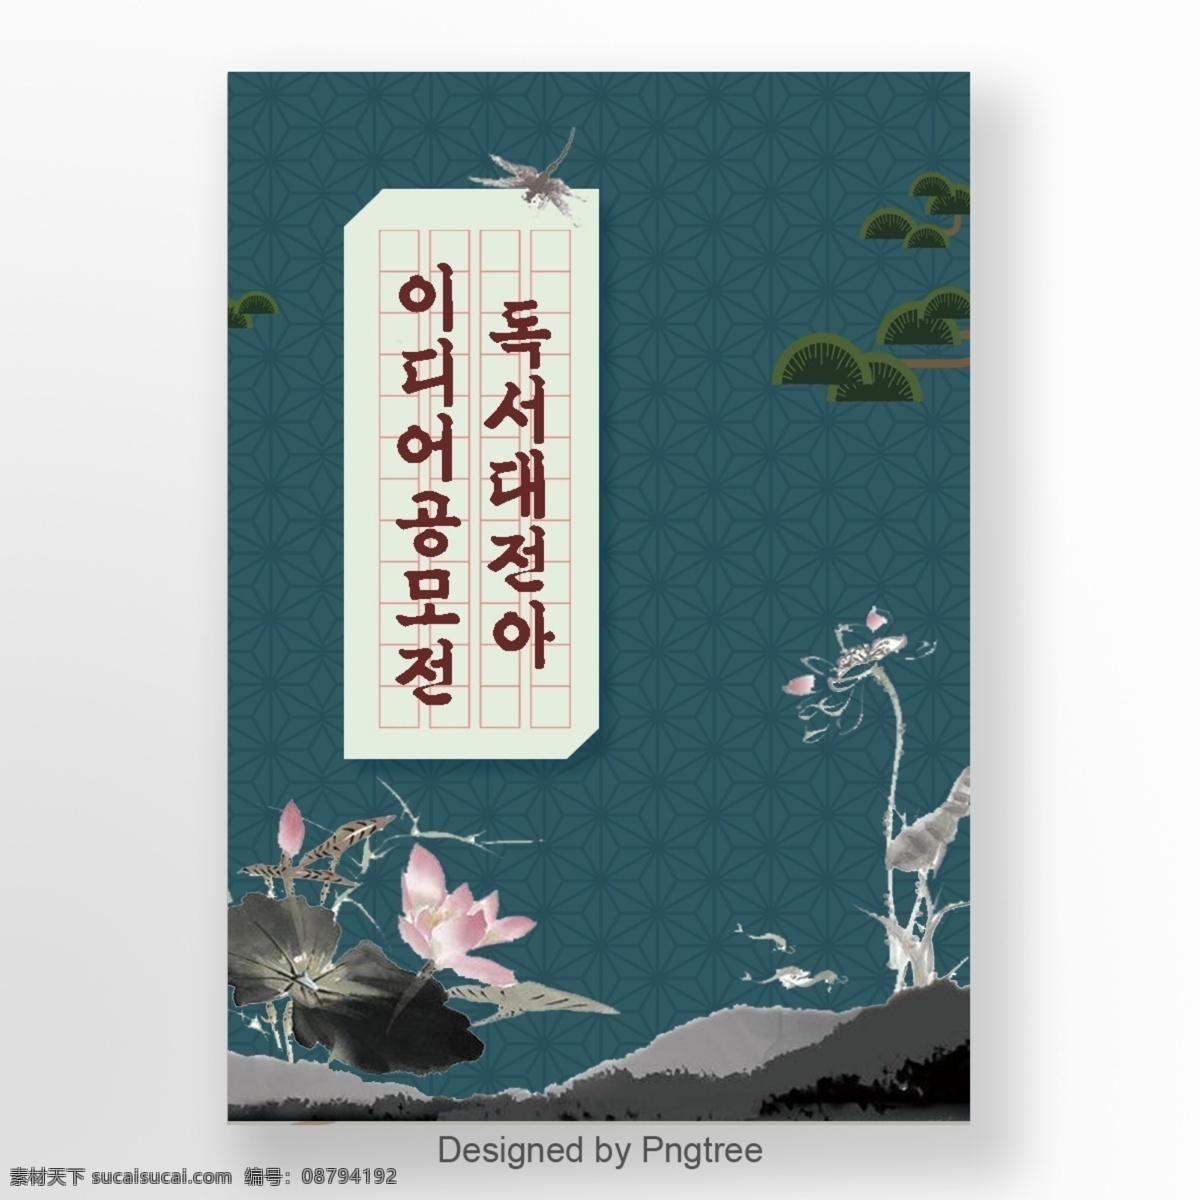 绿色 韩国 风格 传统 阅读 比赛 海报 世界 上 很多 人 大韩民国 读取 竞争 蜻蜓 莲花 树 g